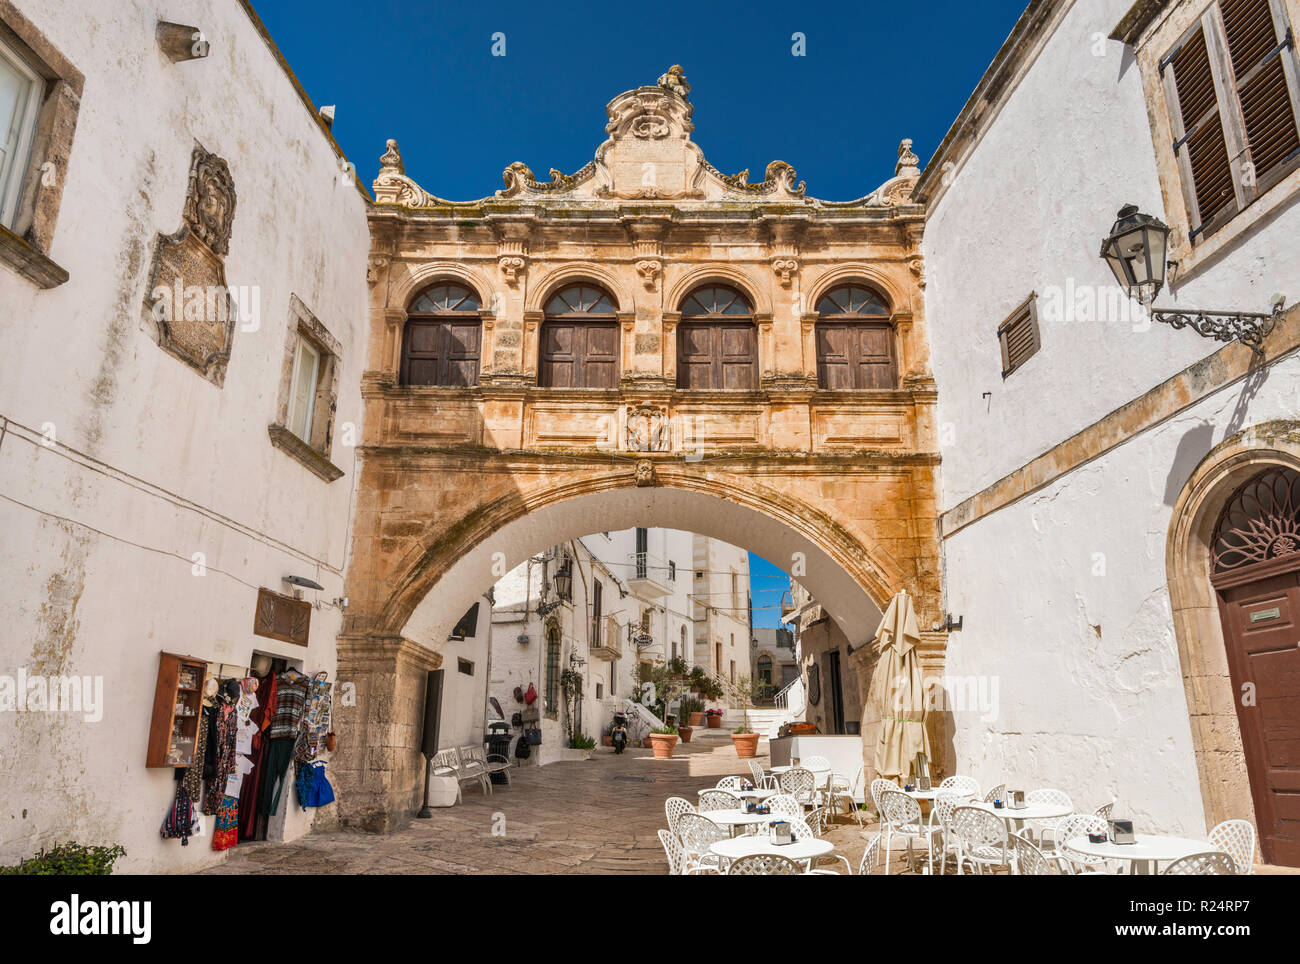 Arco Scoppa, 17th century arch, in Ostuni, Apulia, Italy Stock Photo